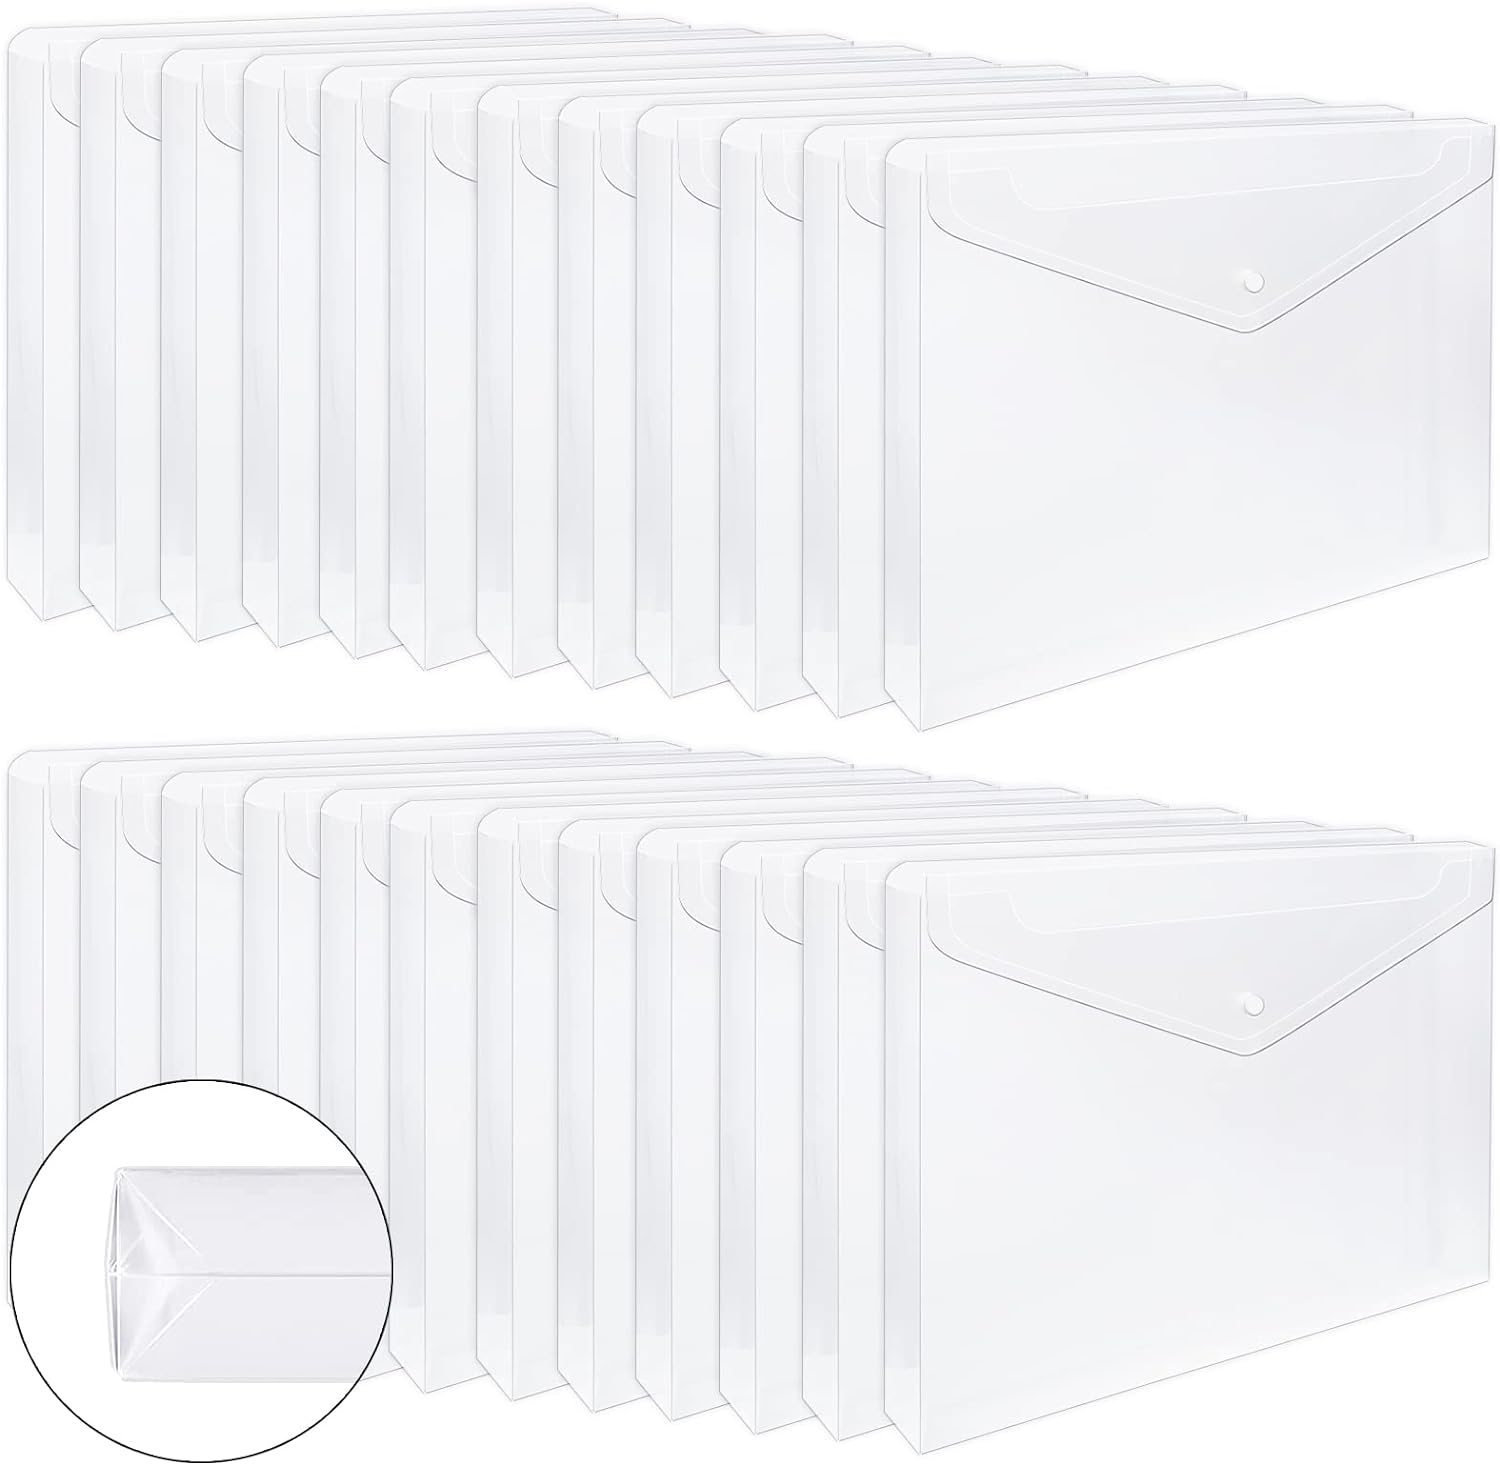 Eoout Plastic Expandable Folders Clear 24pk